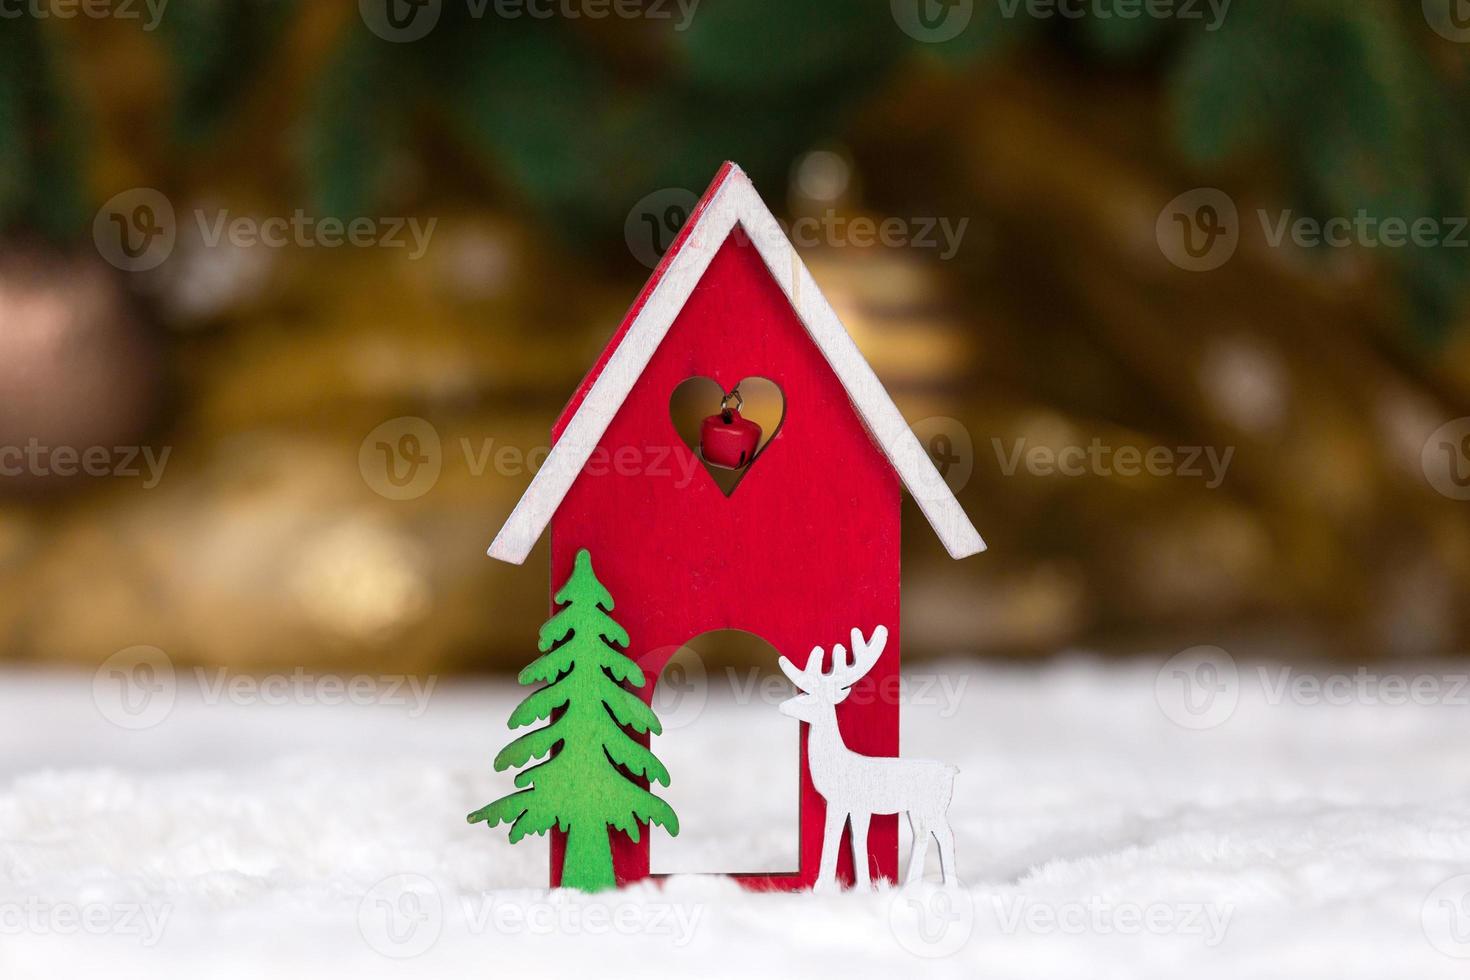 Navidad casa de juguete de madera ciervos y árboles sobre una manta blanca imitando la nieve foto